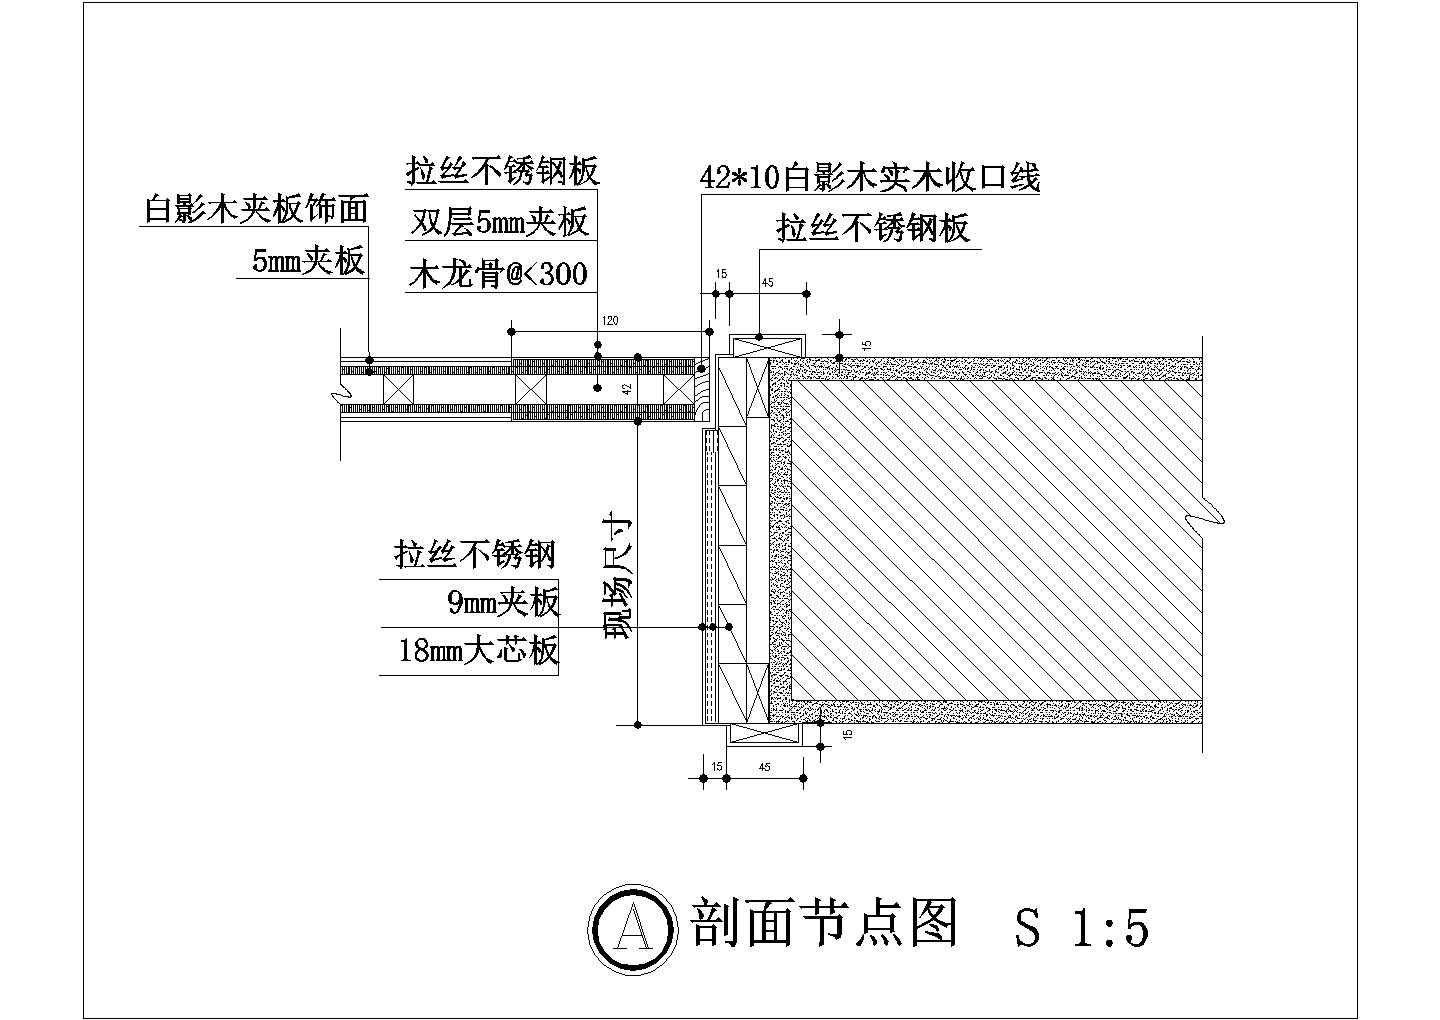 玻璃幕墙三维节点 - 产品一类 - 产品中心 - 浙江高浦建设工程有限公司